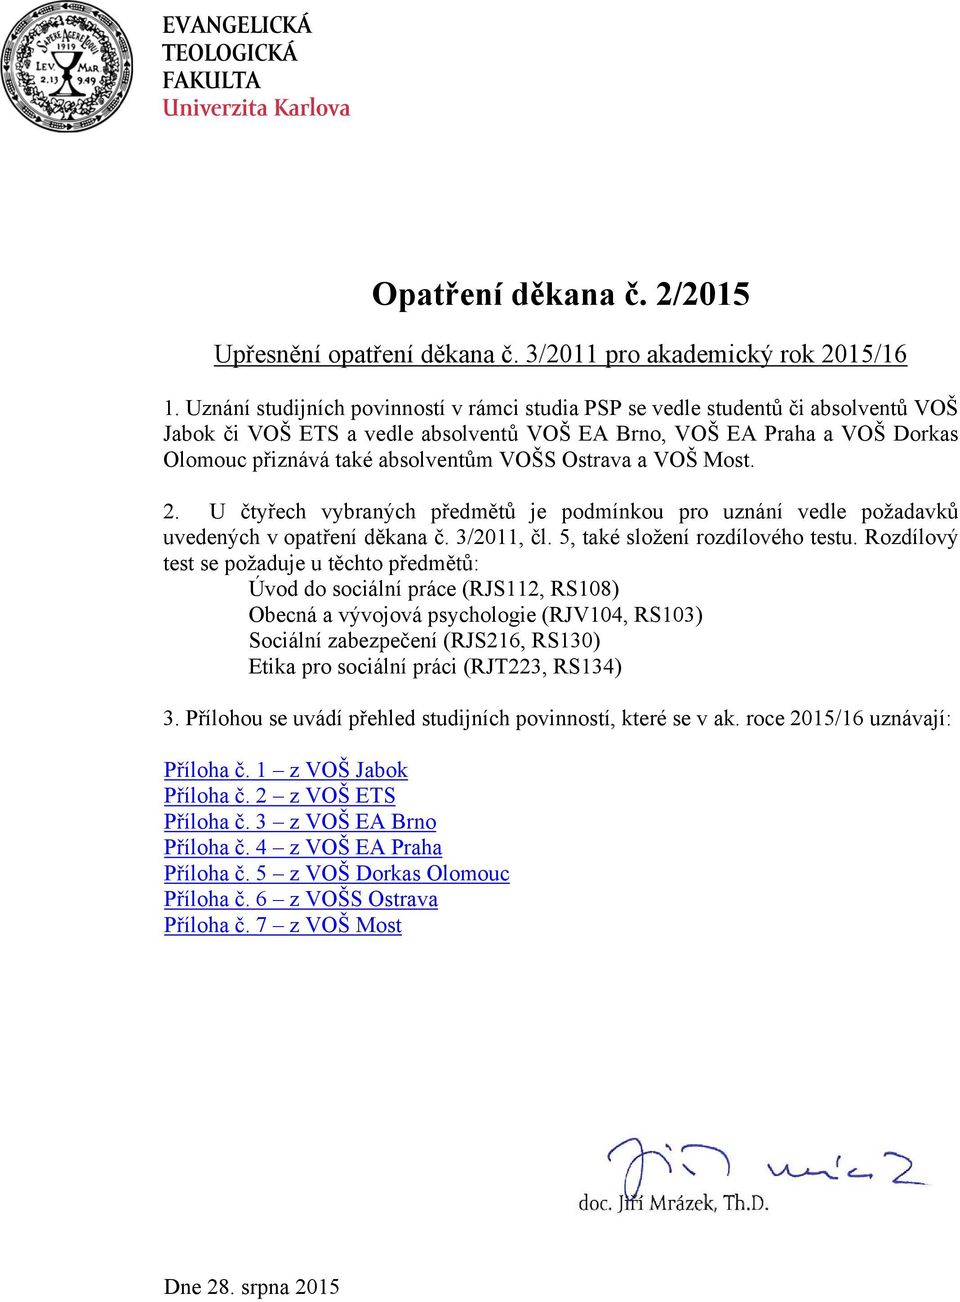 Ostrava a VOŠ Most. 2. U čtyřech vybraných předmětů je podmínkou pro uznání vedle požadavků uvedených v opatření děkana č. 3/2011, čl. 5, také složení rozdílového testu.